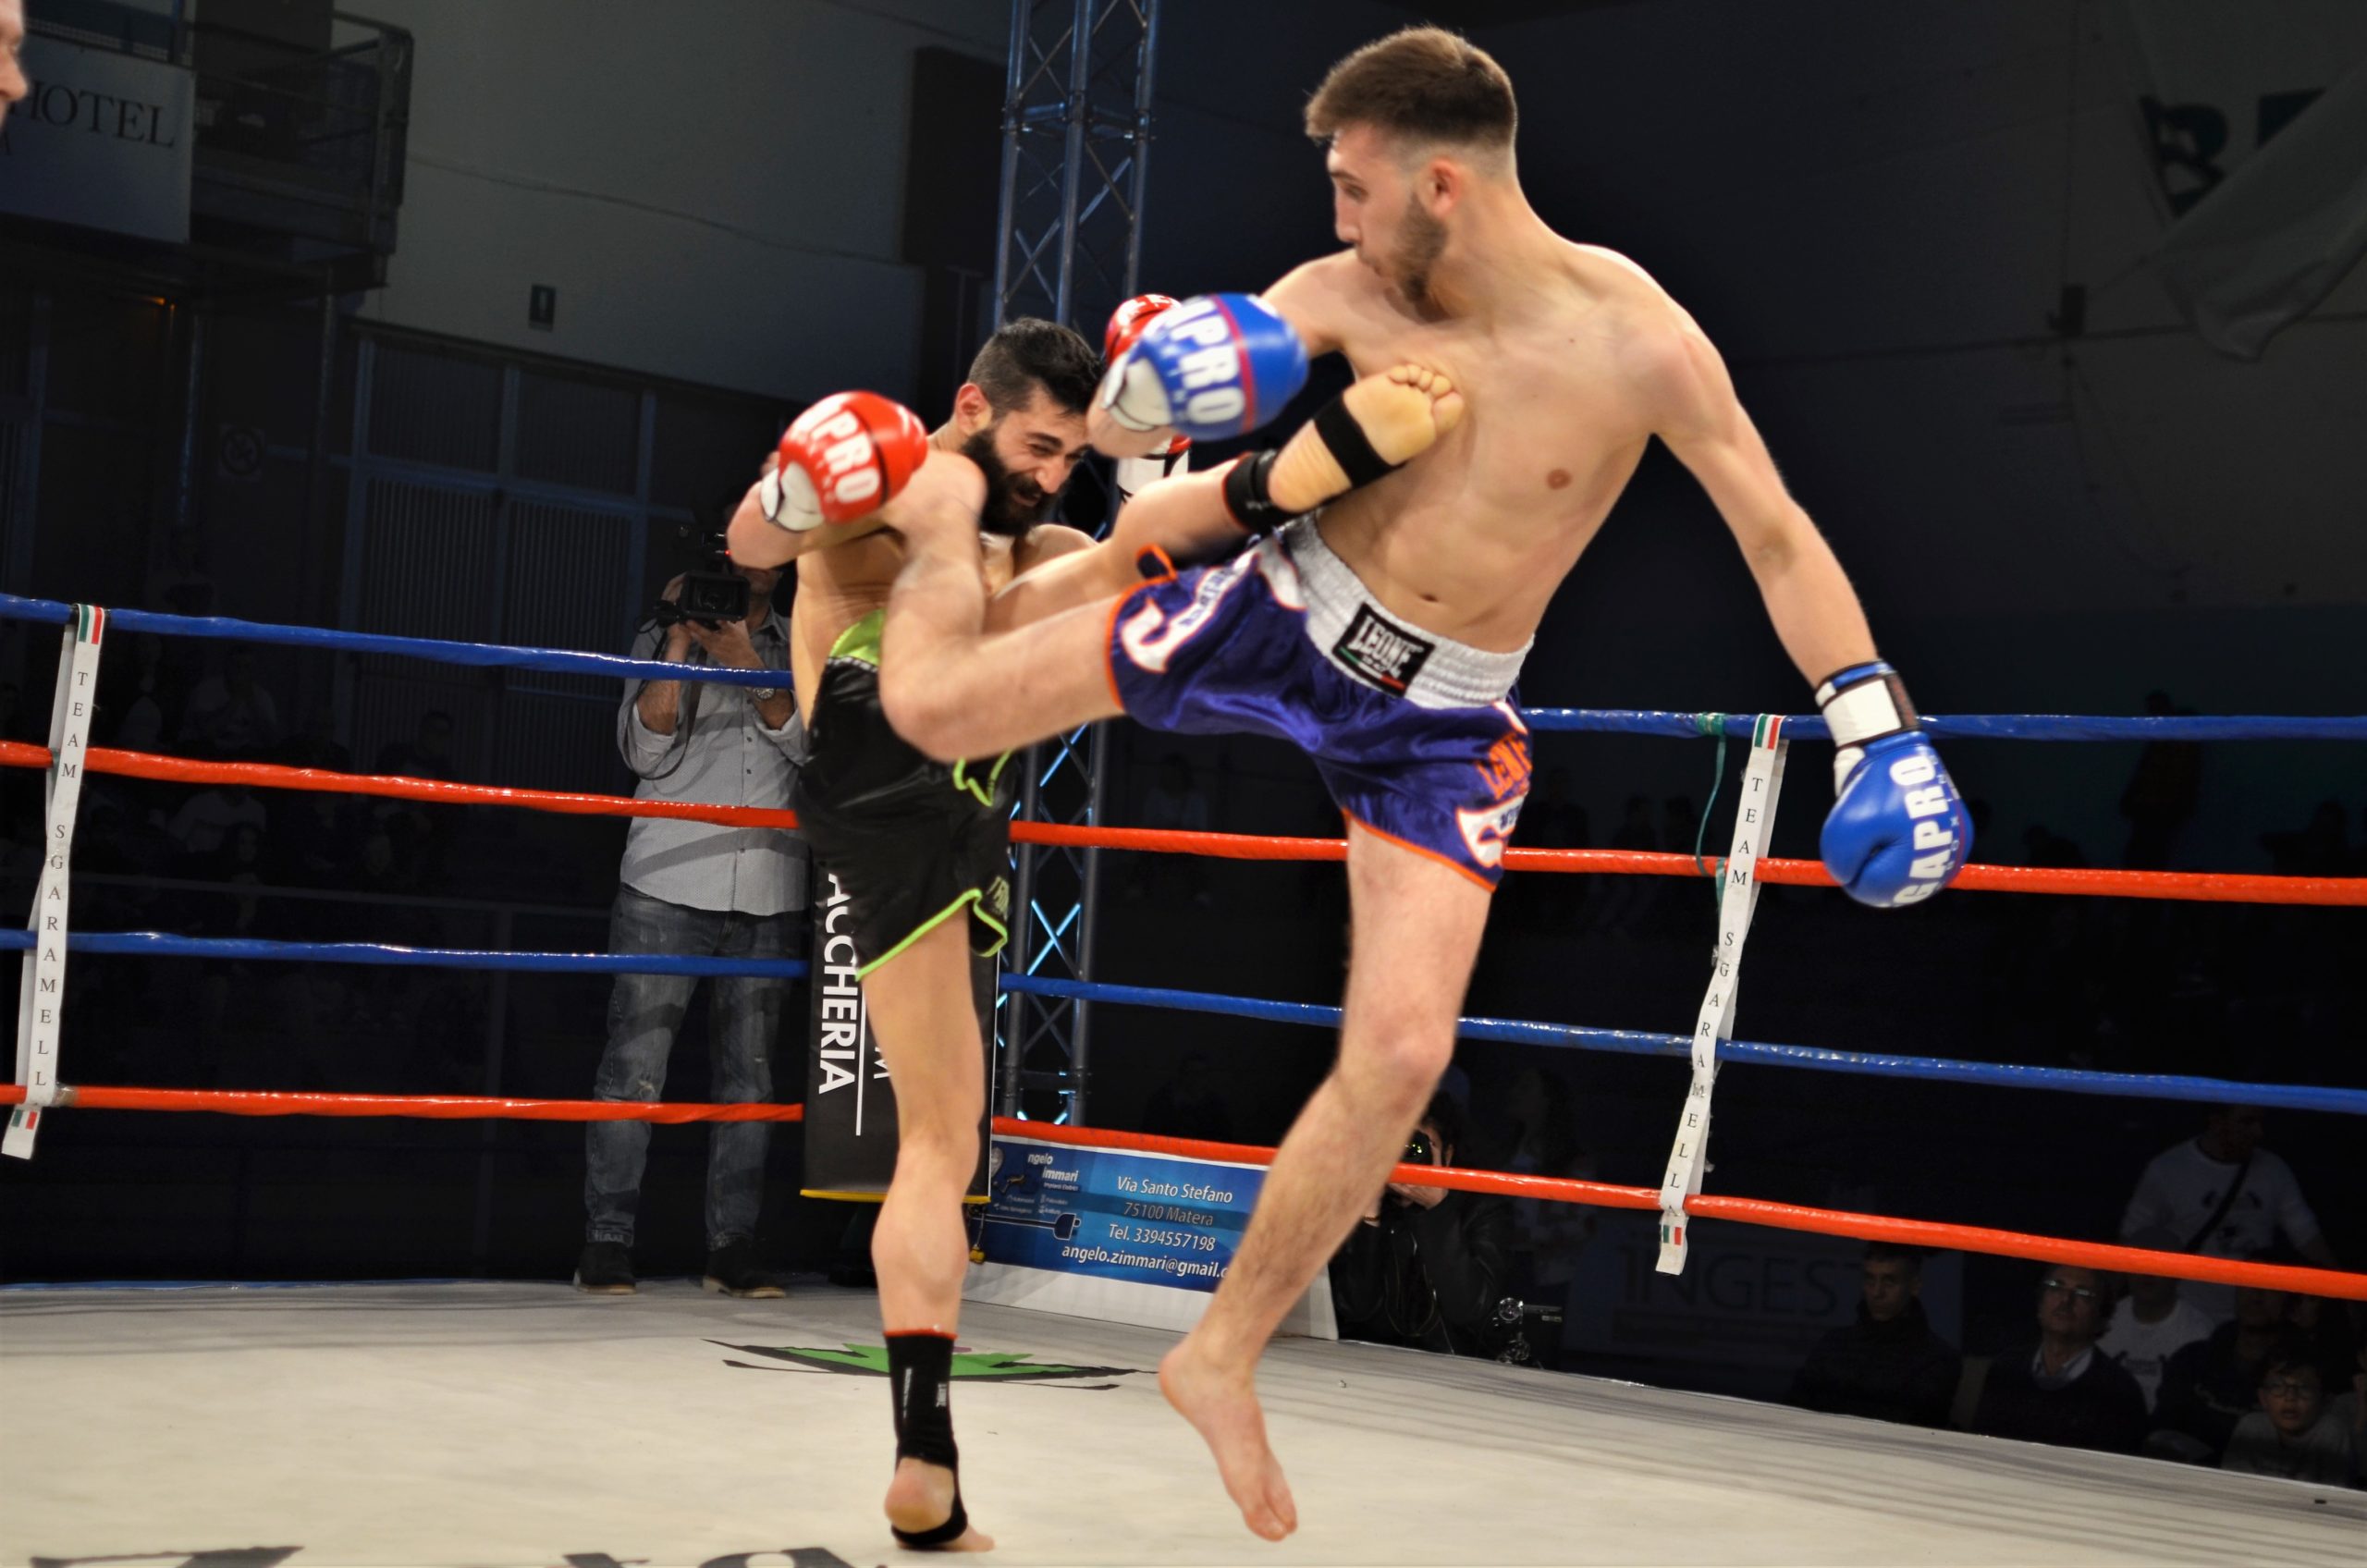 fighter-lucani-in-partenza-per-jesolo-dove-si-svolgeranno-i-campionati-italiani-assoluti-di-kickboxing